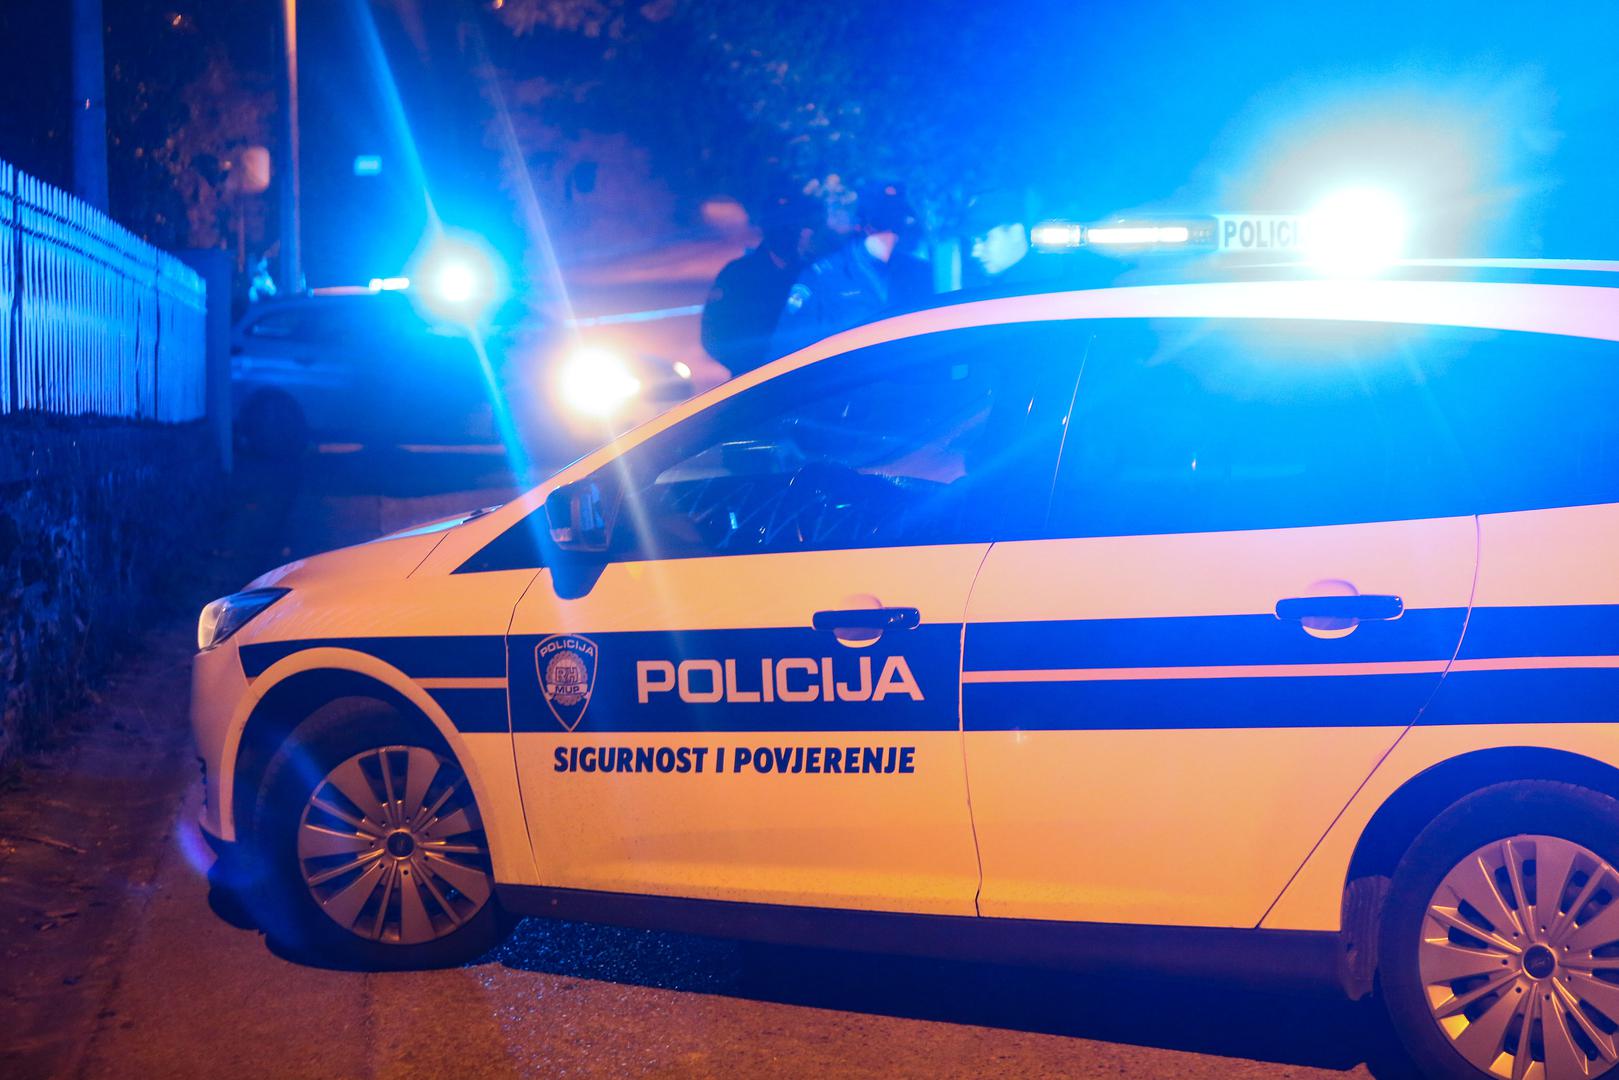 21.10.2020., Zagreb - Oko 20:20 policija je zaprimila dojavu o pronadjenom mrtvom tijelu u Oresju (Susedgrad). U stanu je osim mrtvog tijela pronadjen i tesko ozlijedjeni muskarac koji je takodjer ubrzo preminuo.

Photo: Marin Tironi/PIXSELL